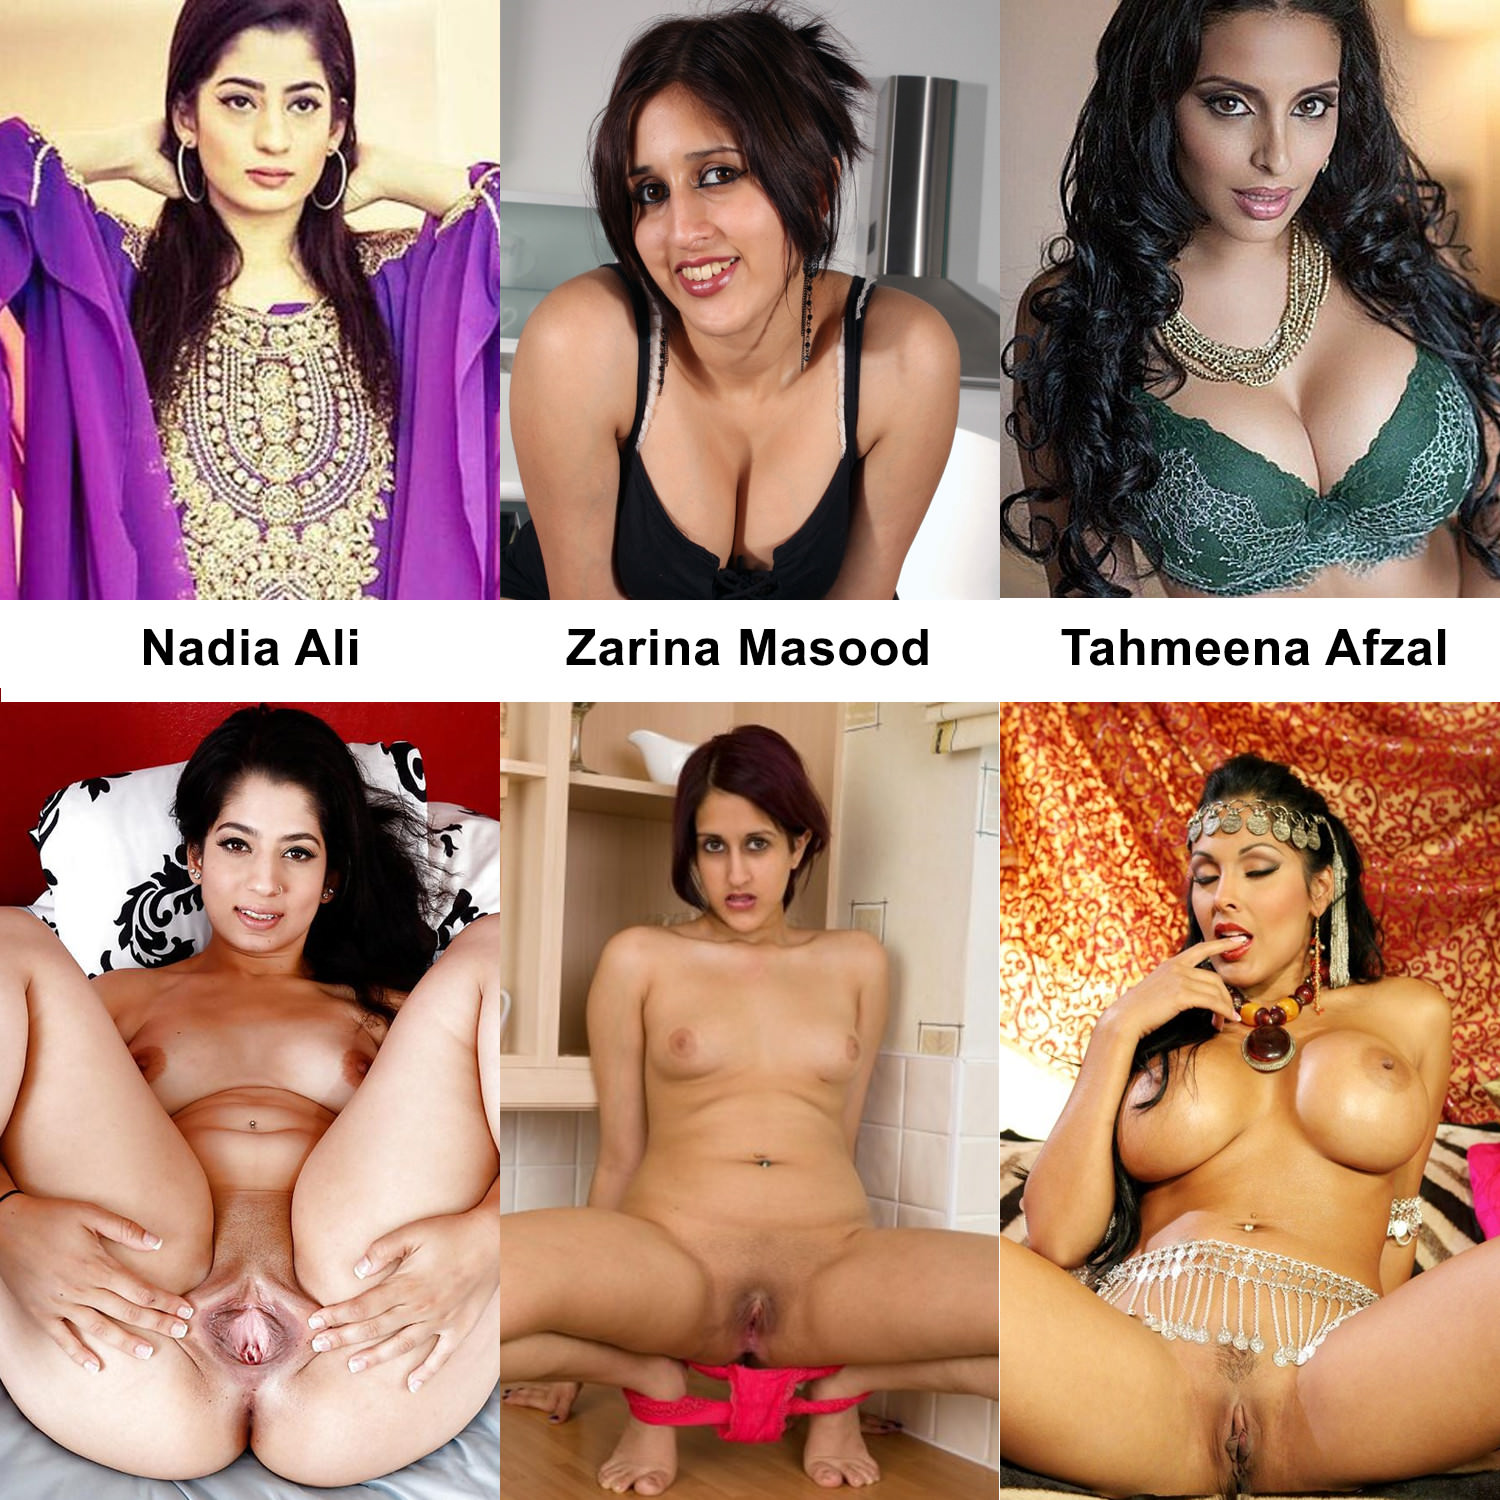 Pakistan porn best adult free images.